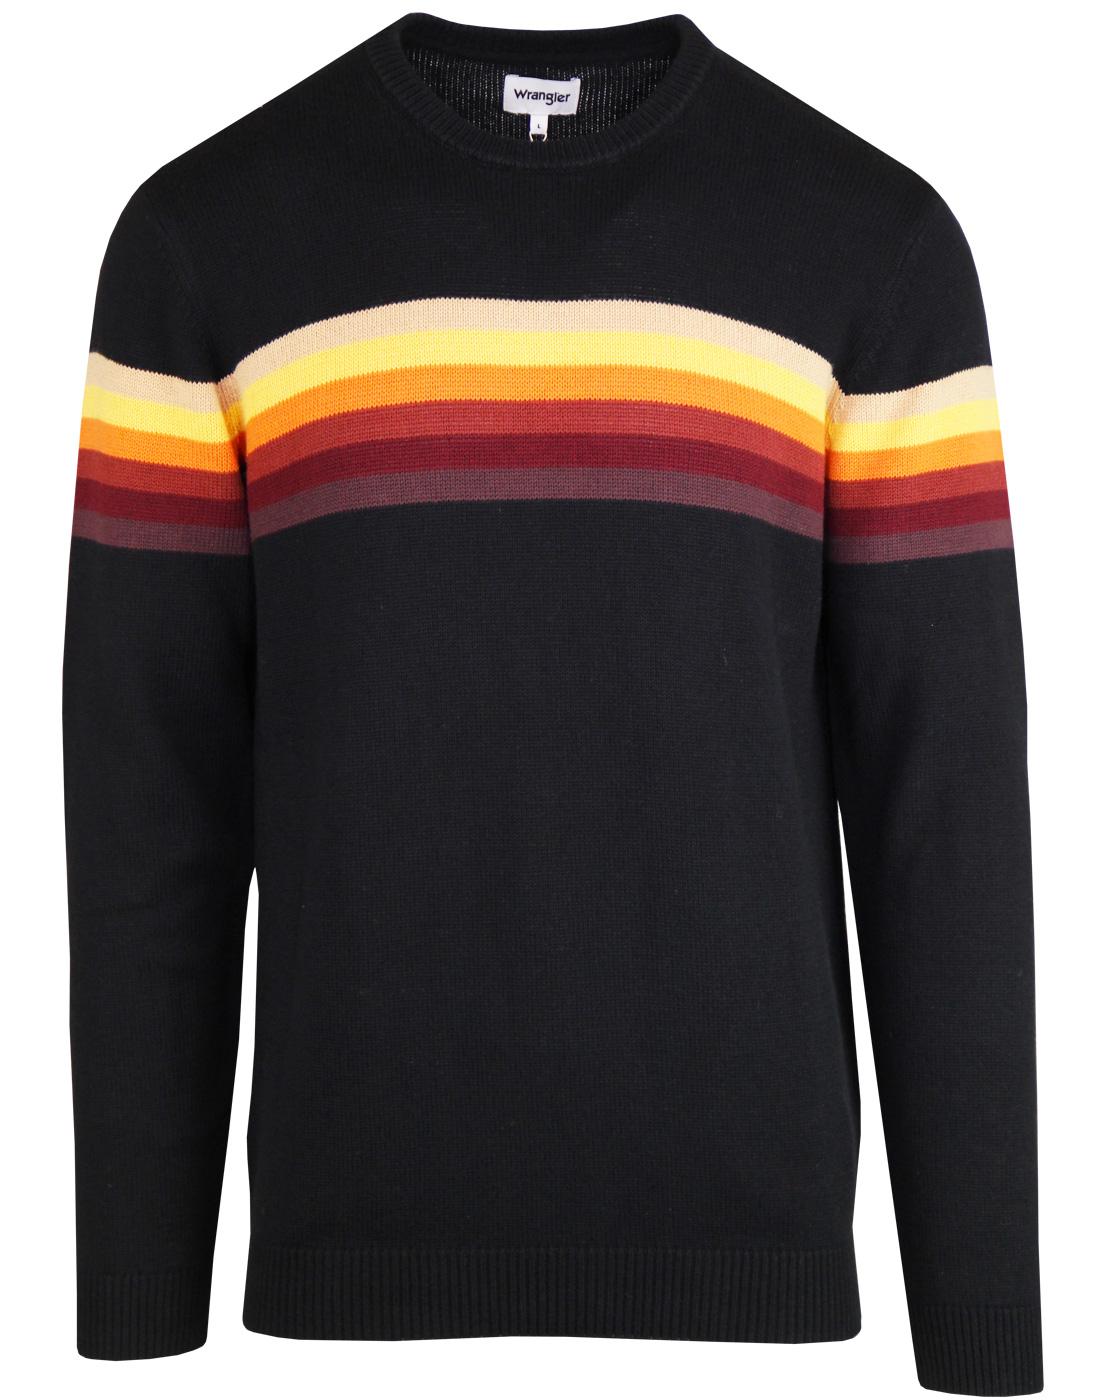 WRANGLER Retro 1970s Rainbow Stripe Knitted Jumper